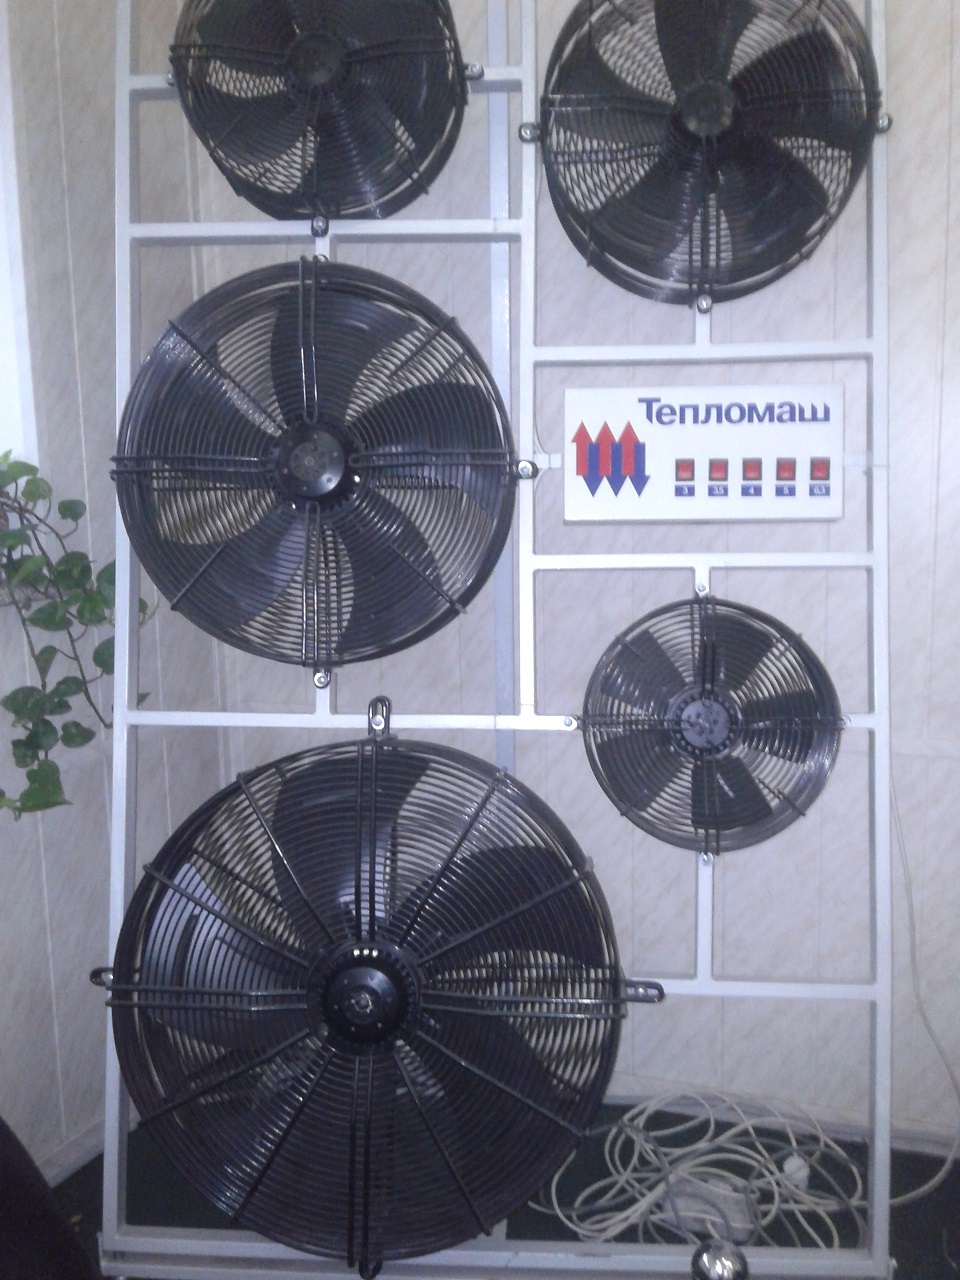 Осевые вентиляторы Тепломаш. Фотография на заводе 2014 год